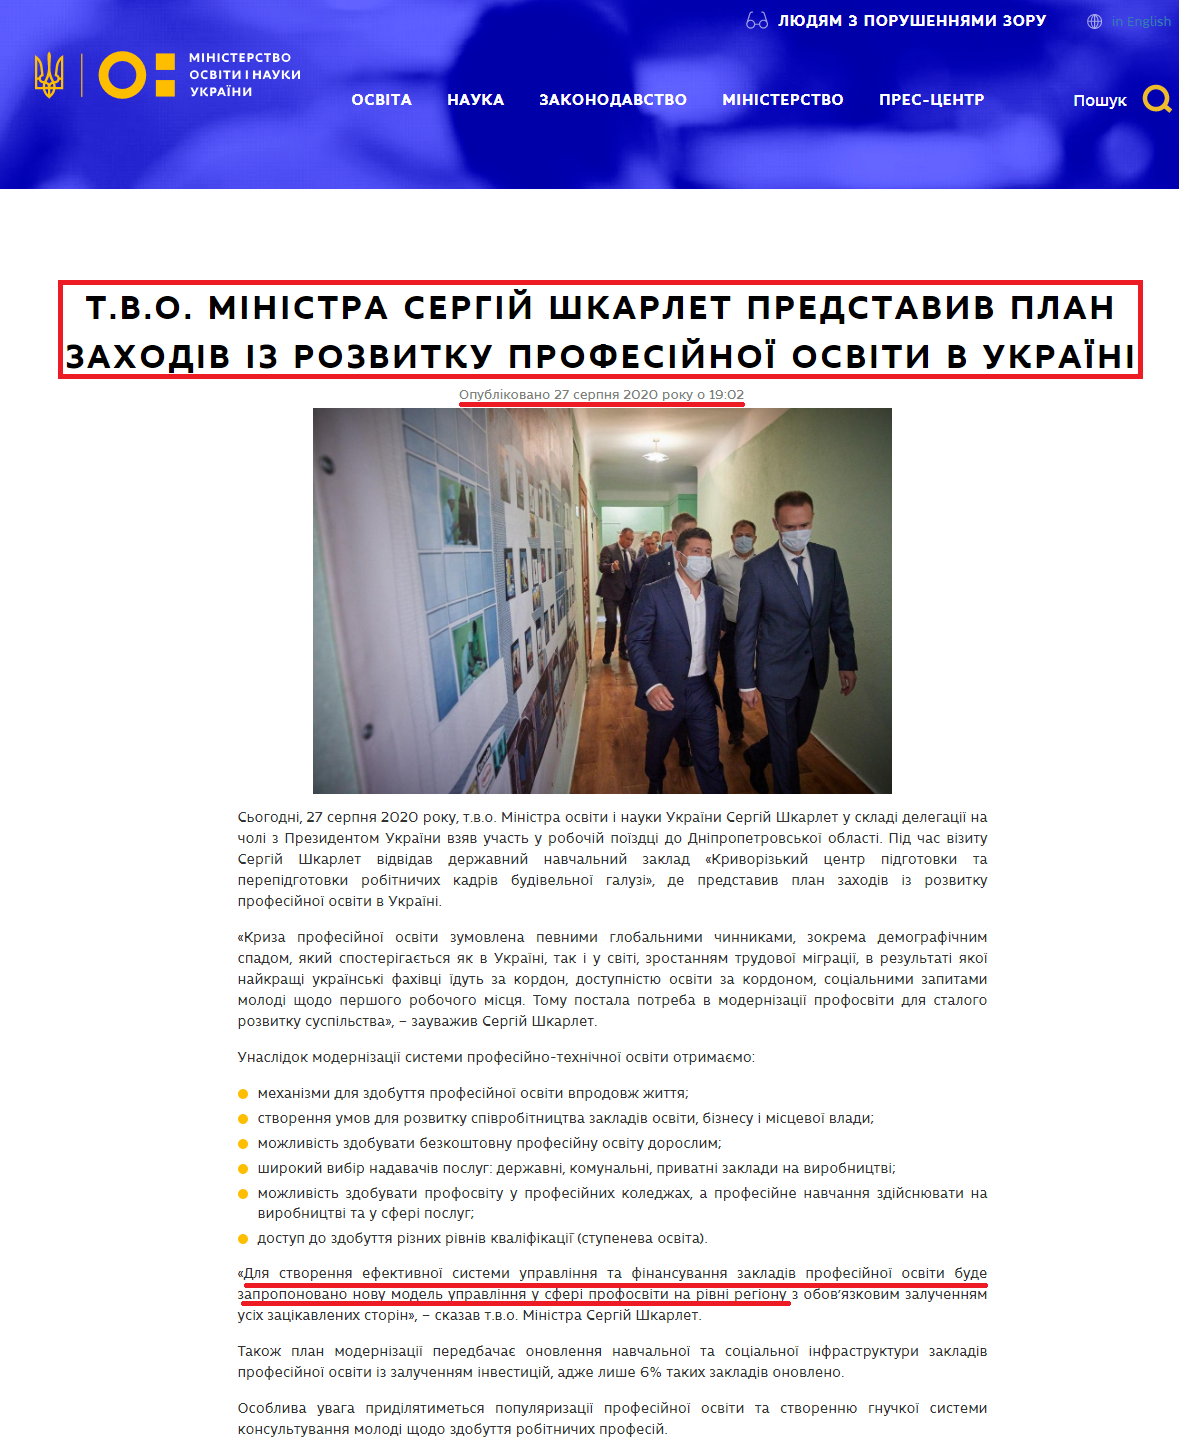 https://mon.gov.ua/ua/news/tvo-ministra-sergij-shkarlet-predstaviv-plan-zahodiv-iz-rozvitku-profesijnoyi-osviti-v-ukrayini